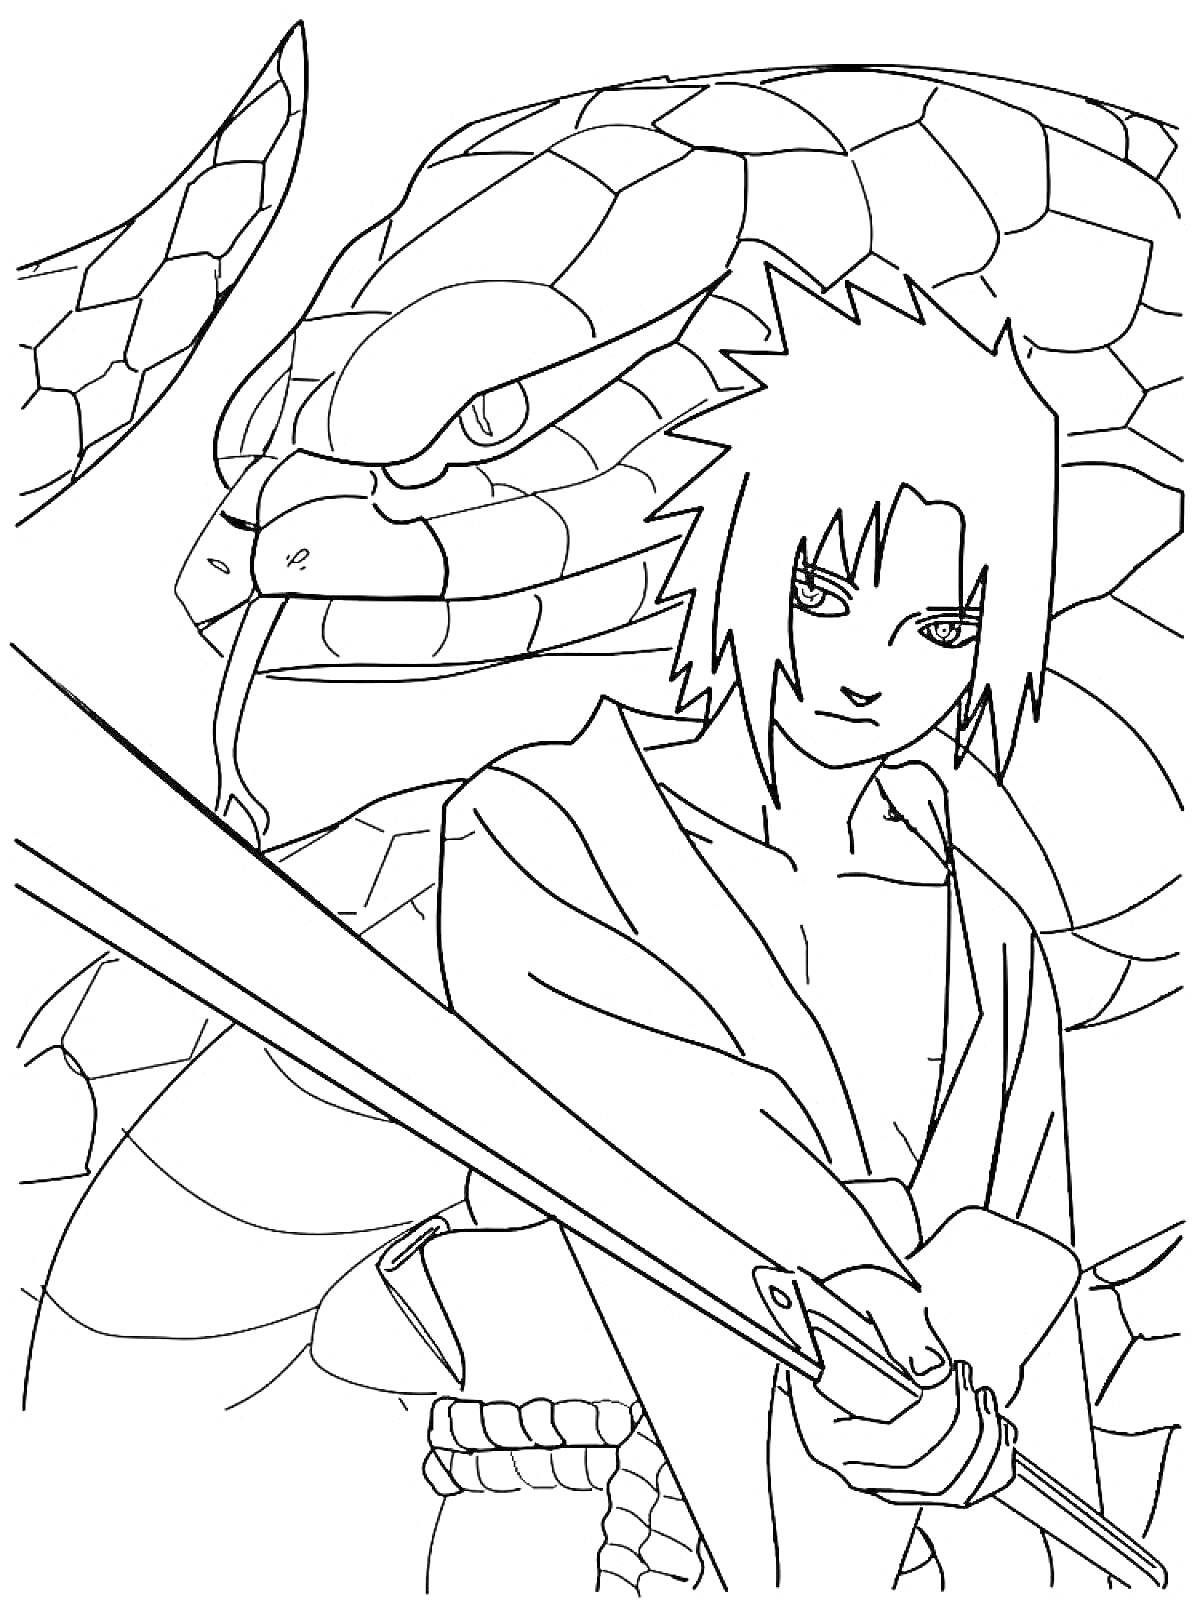 Саске Учиха с гигантской змеей и мечом